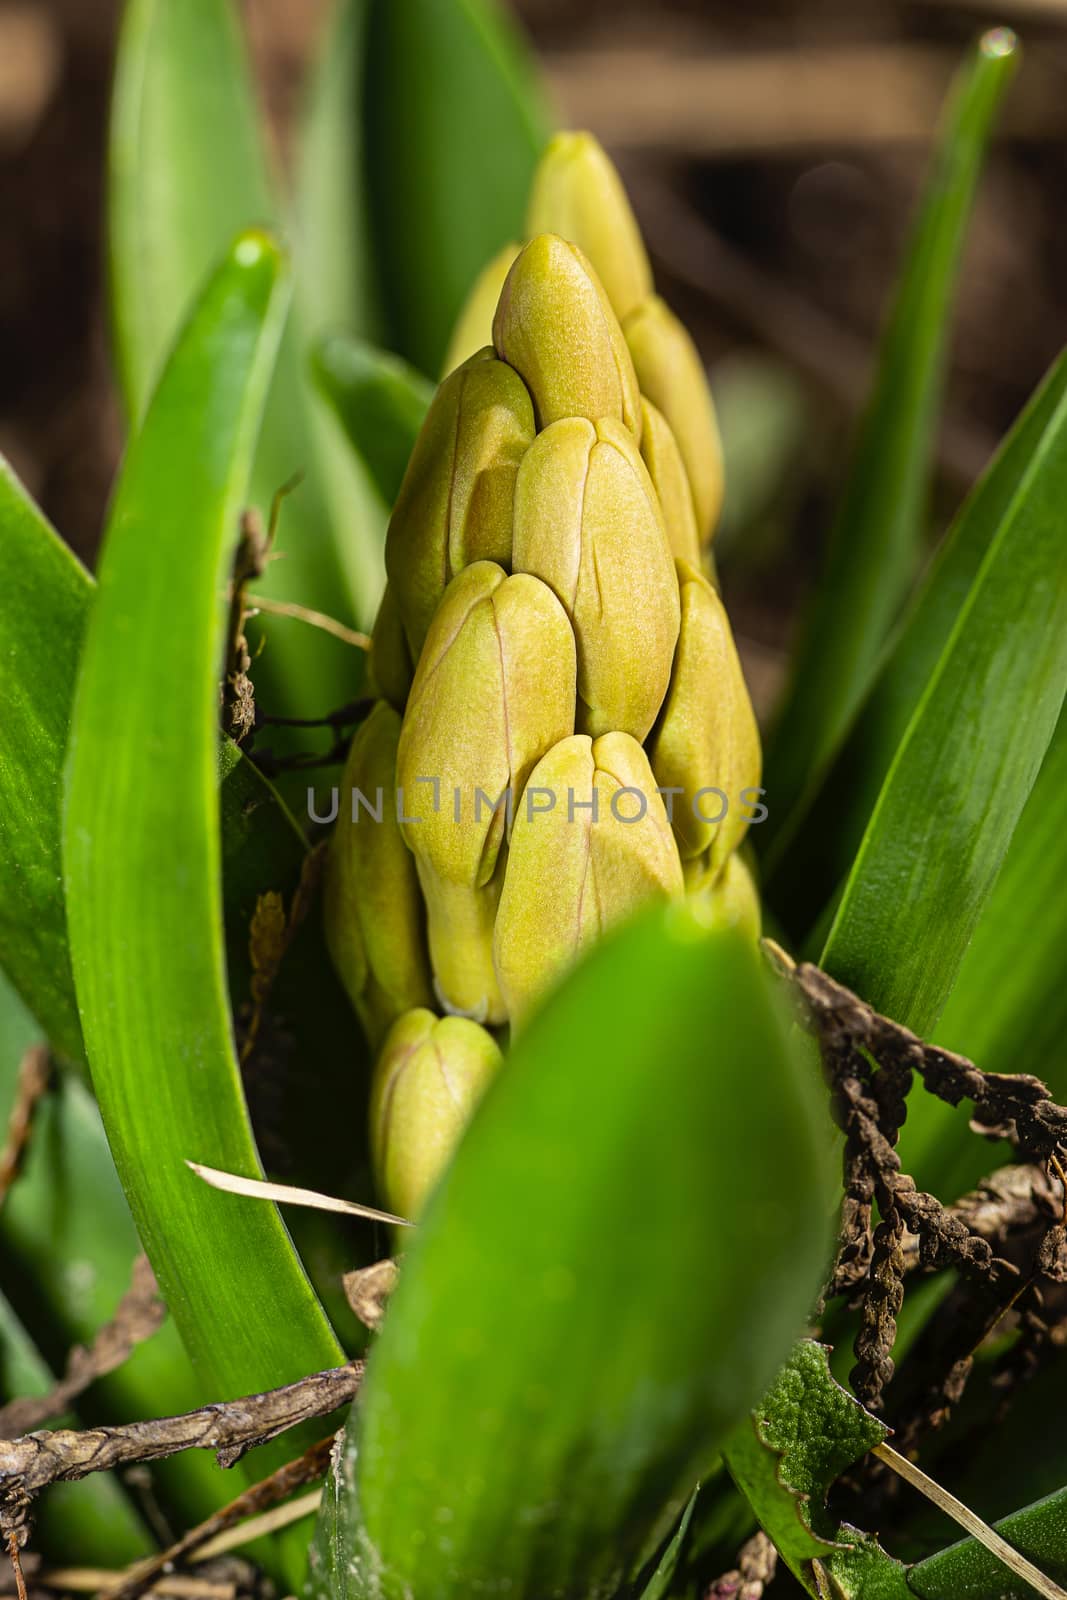 Growing Hyacinth flower by mypstudio